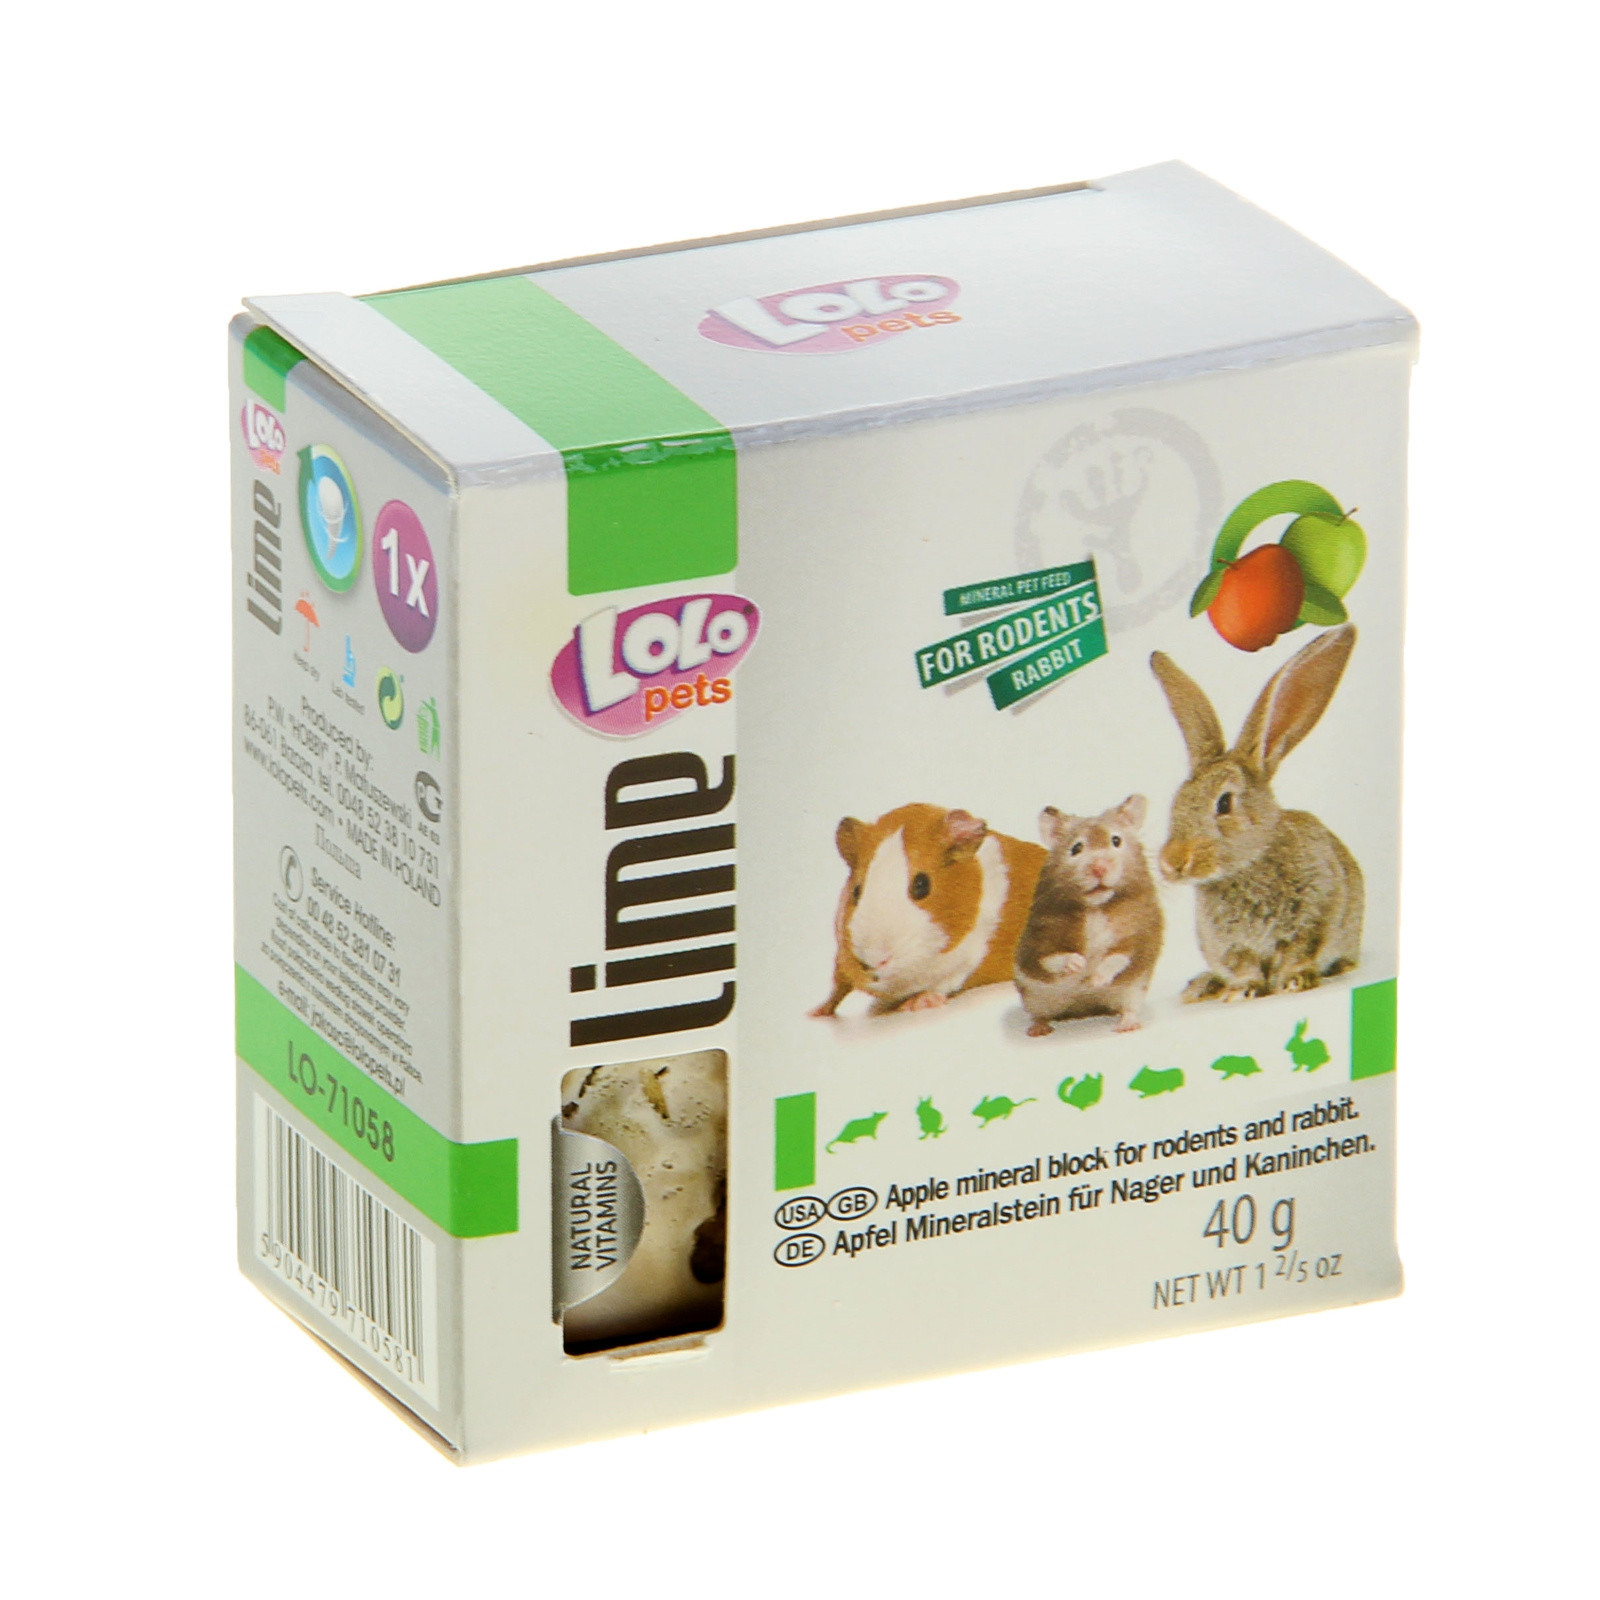 LoLo Pets минеральный камень для грызунов и кроликов 40г яблоко